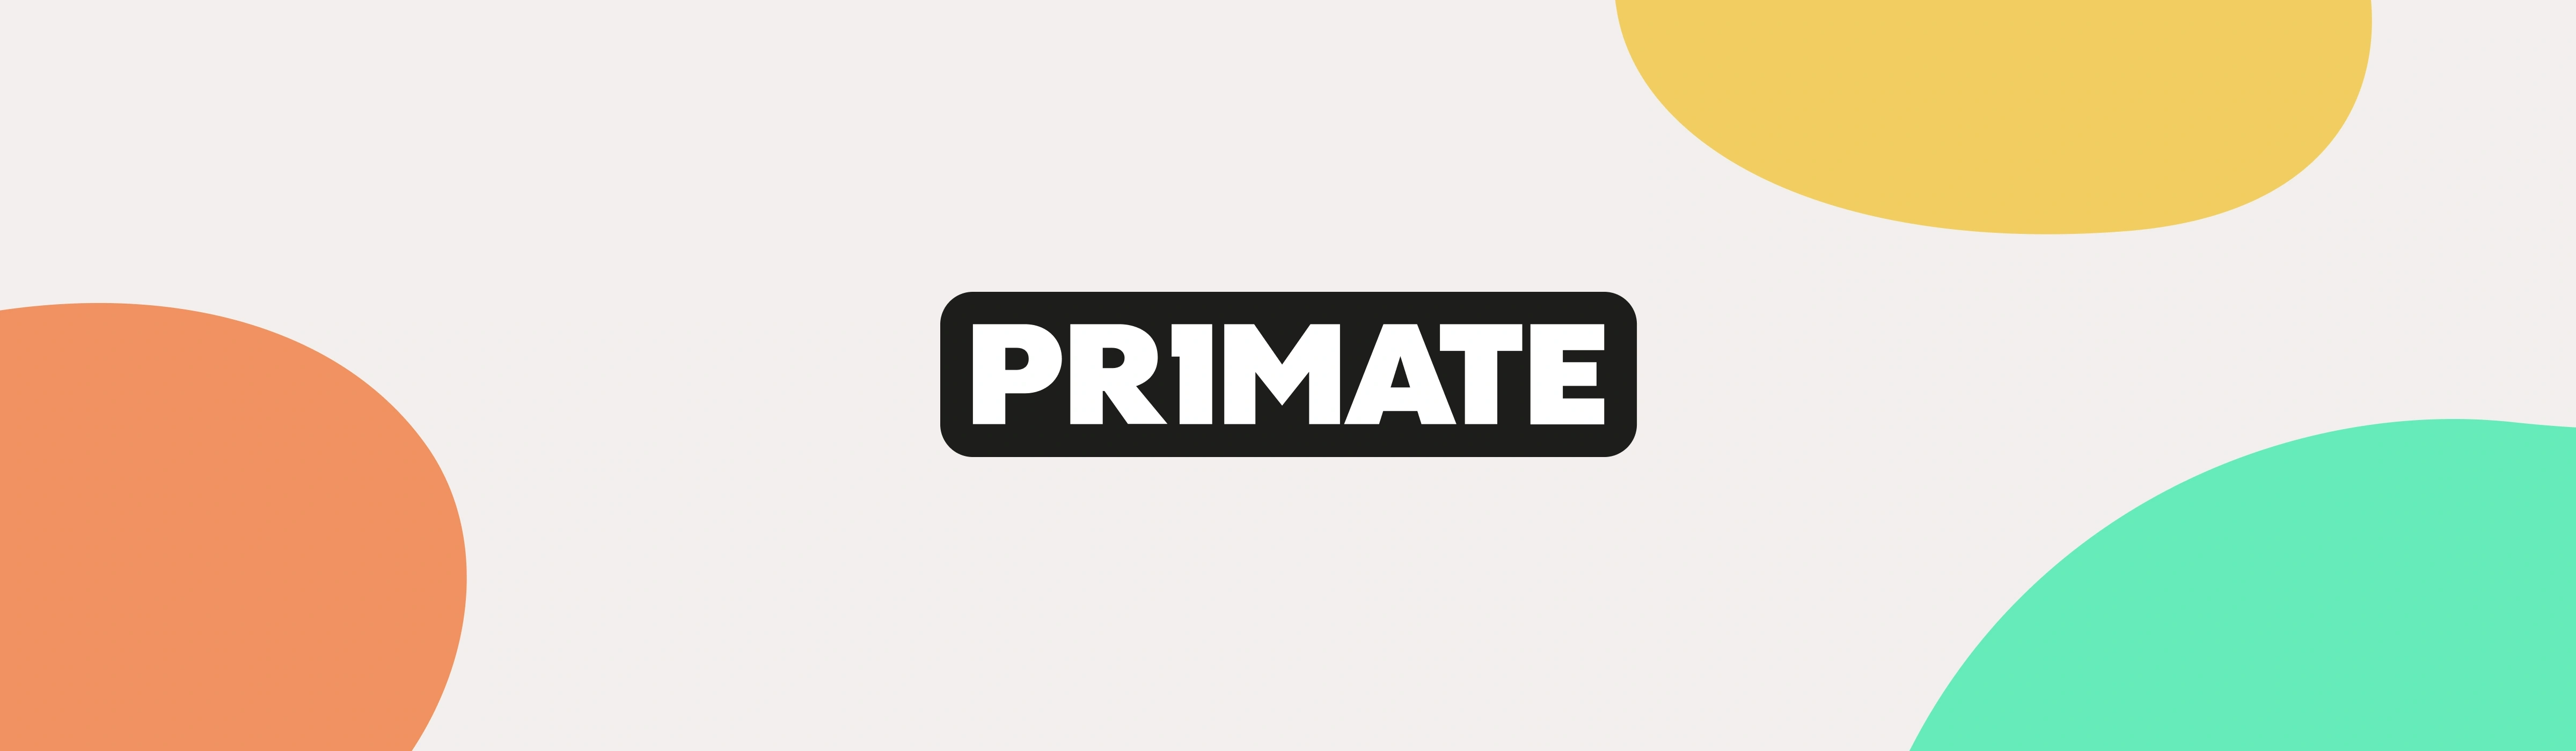 Primate's logo